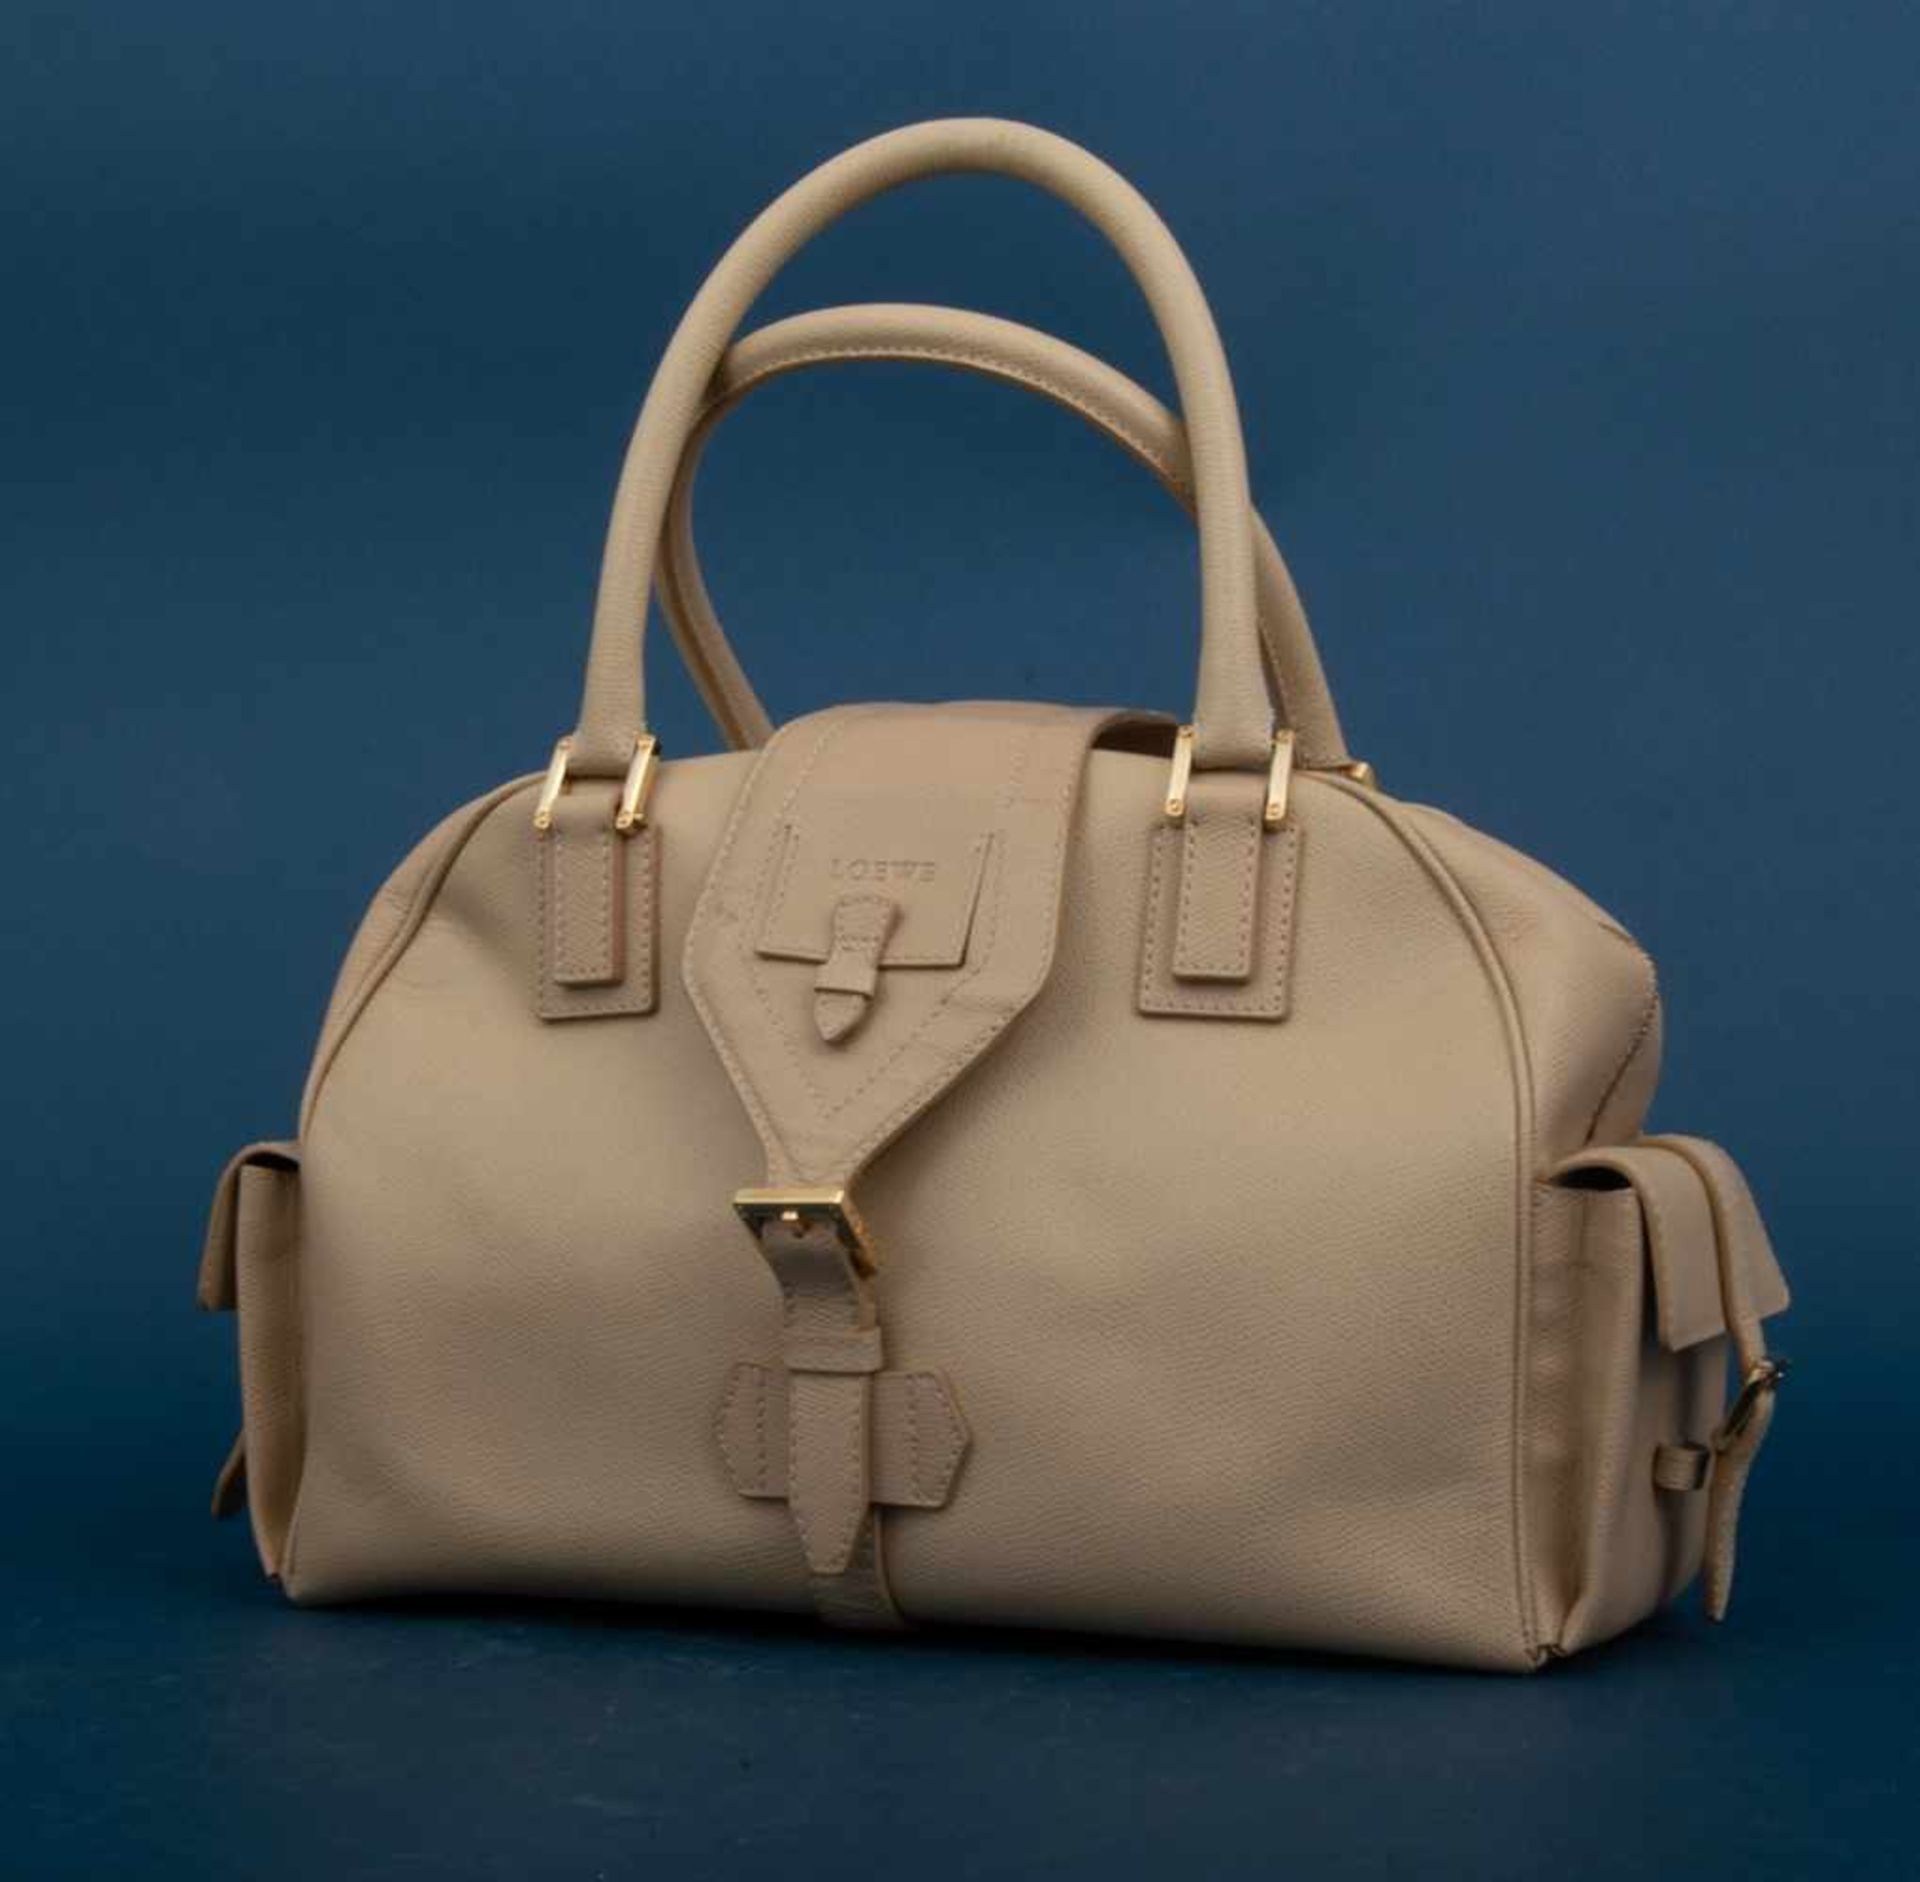 "Loewe" - modische, querformatige Handtasche des spanischen Labels. Formschöne Tasche mit 2